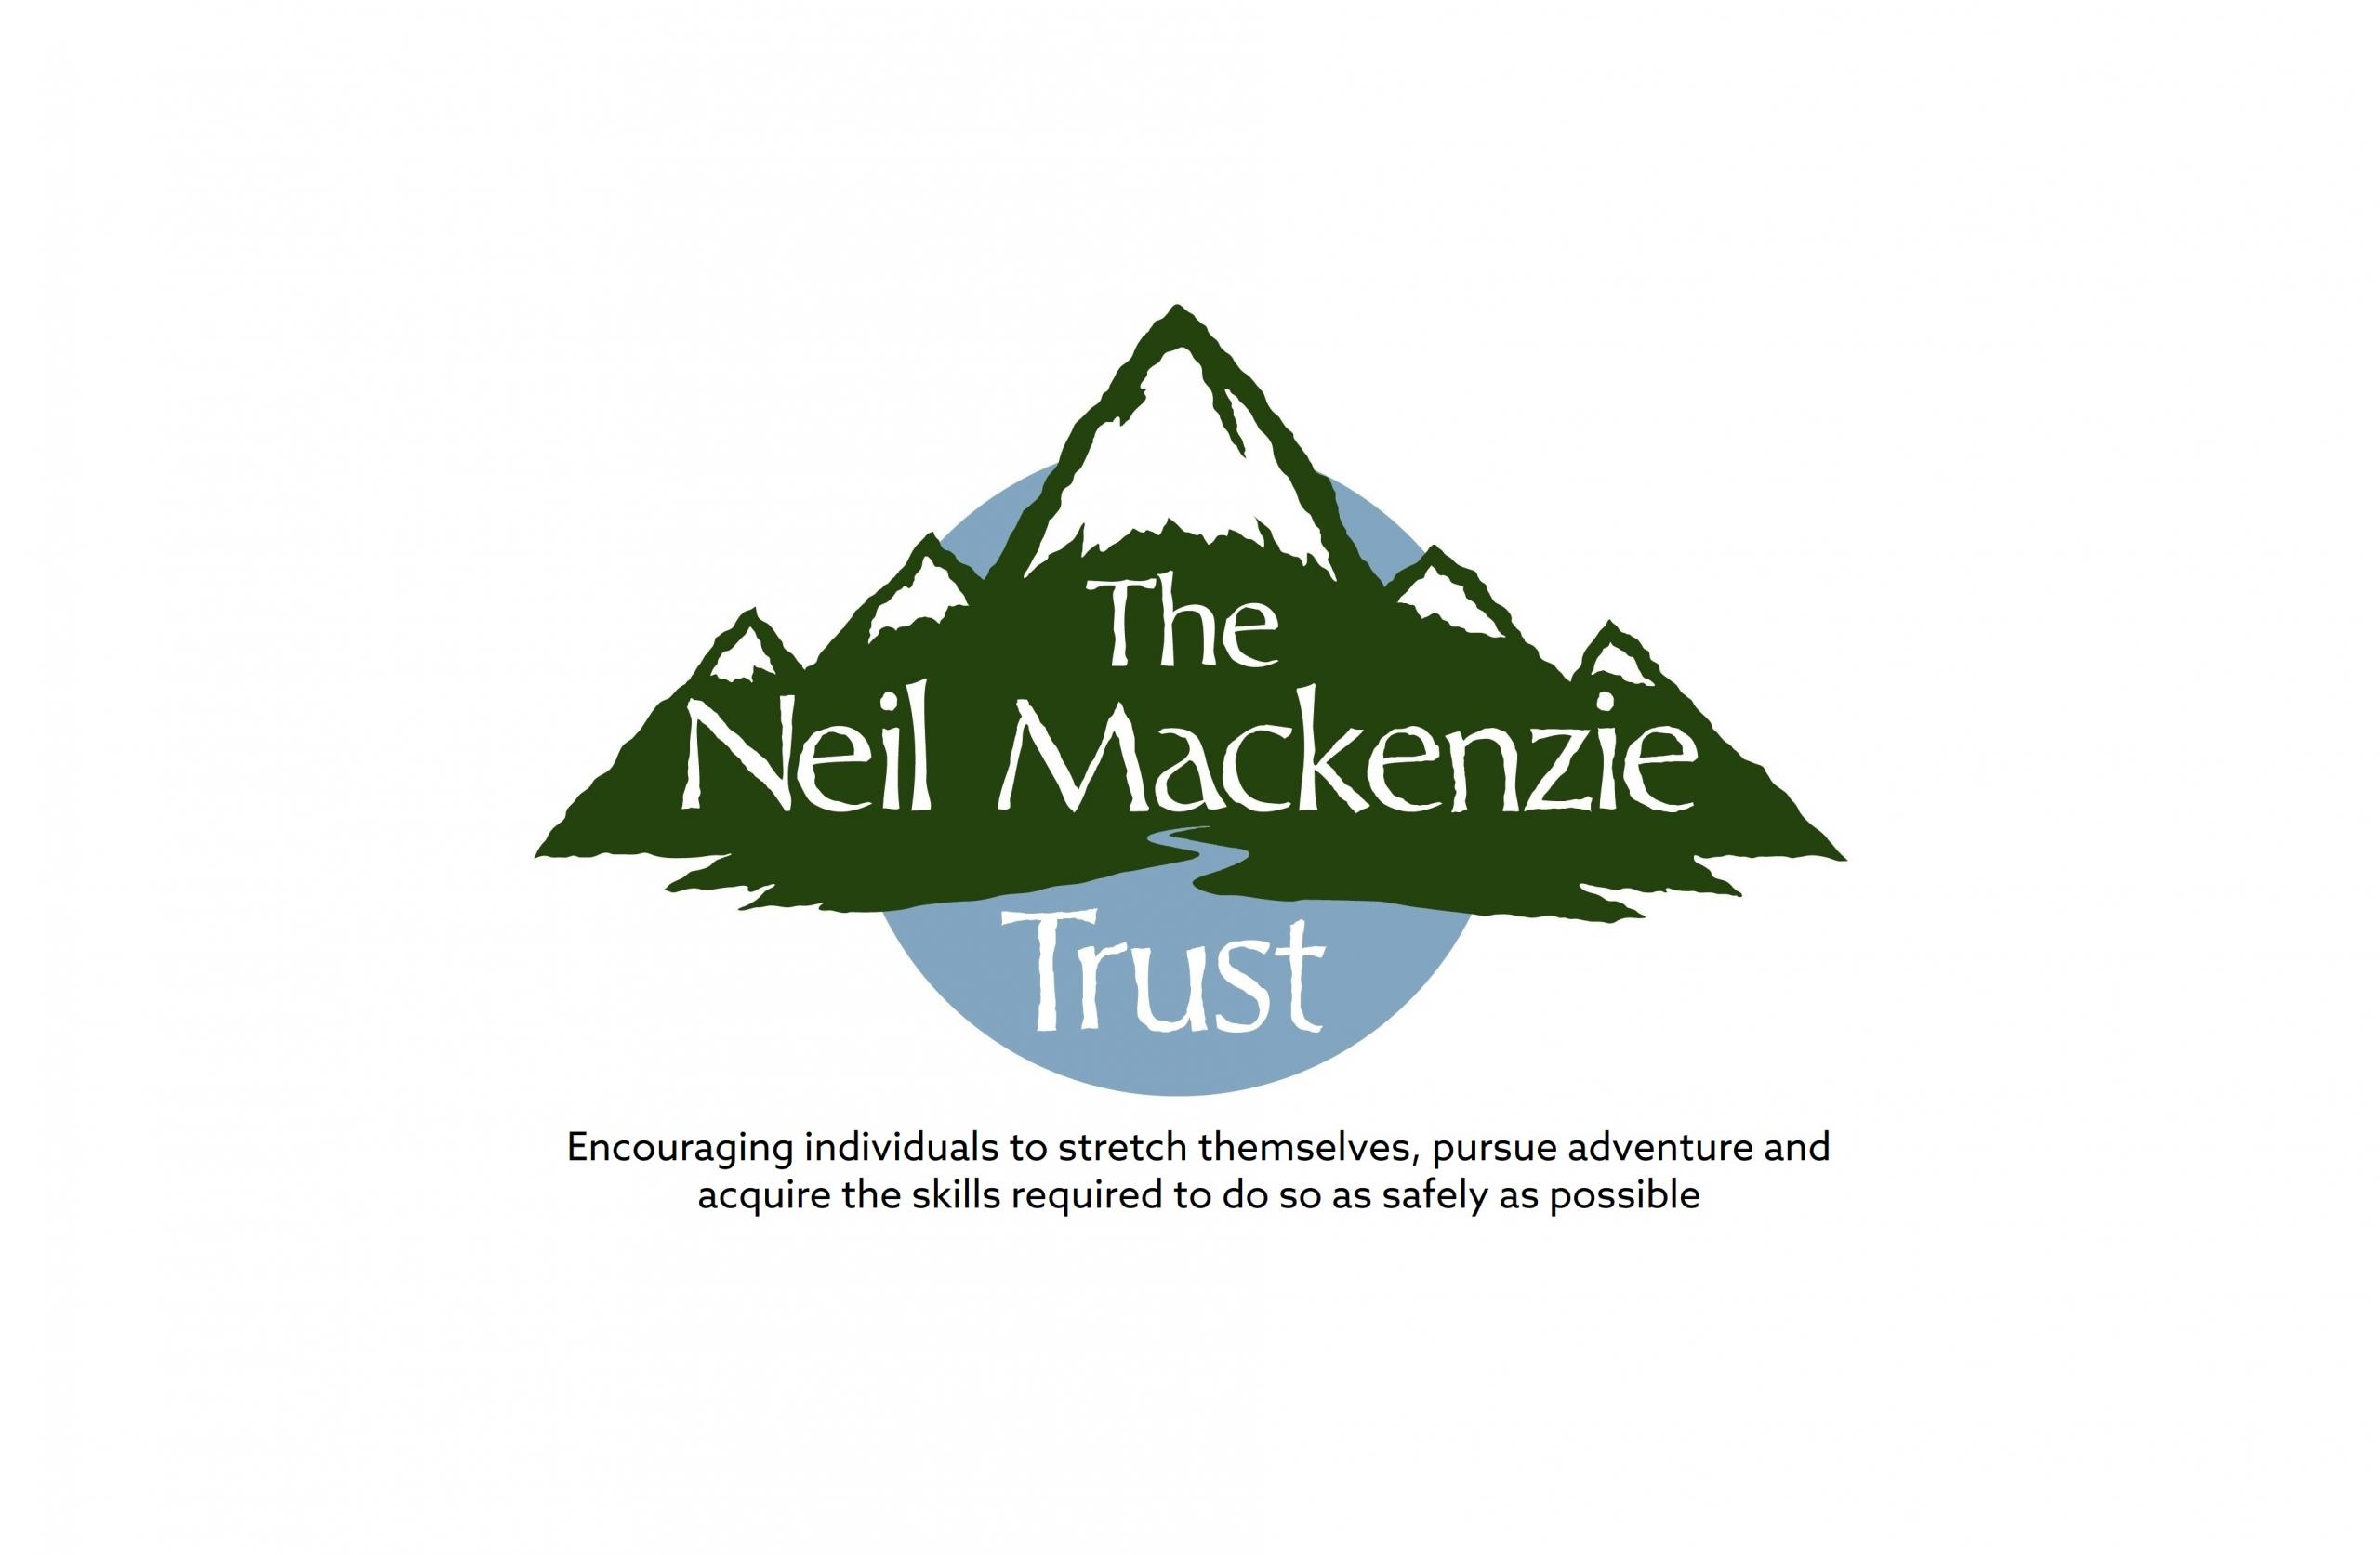 The Neil Mackenzie Trust logo